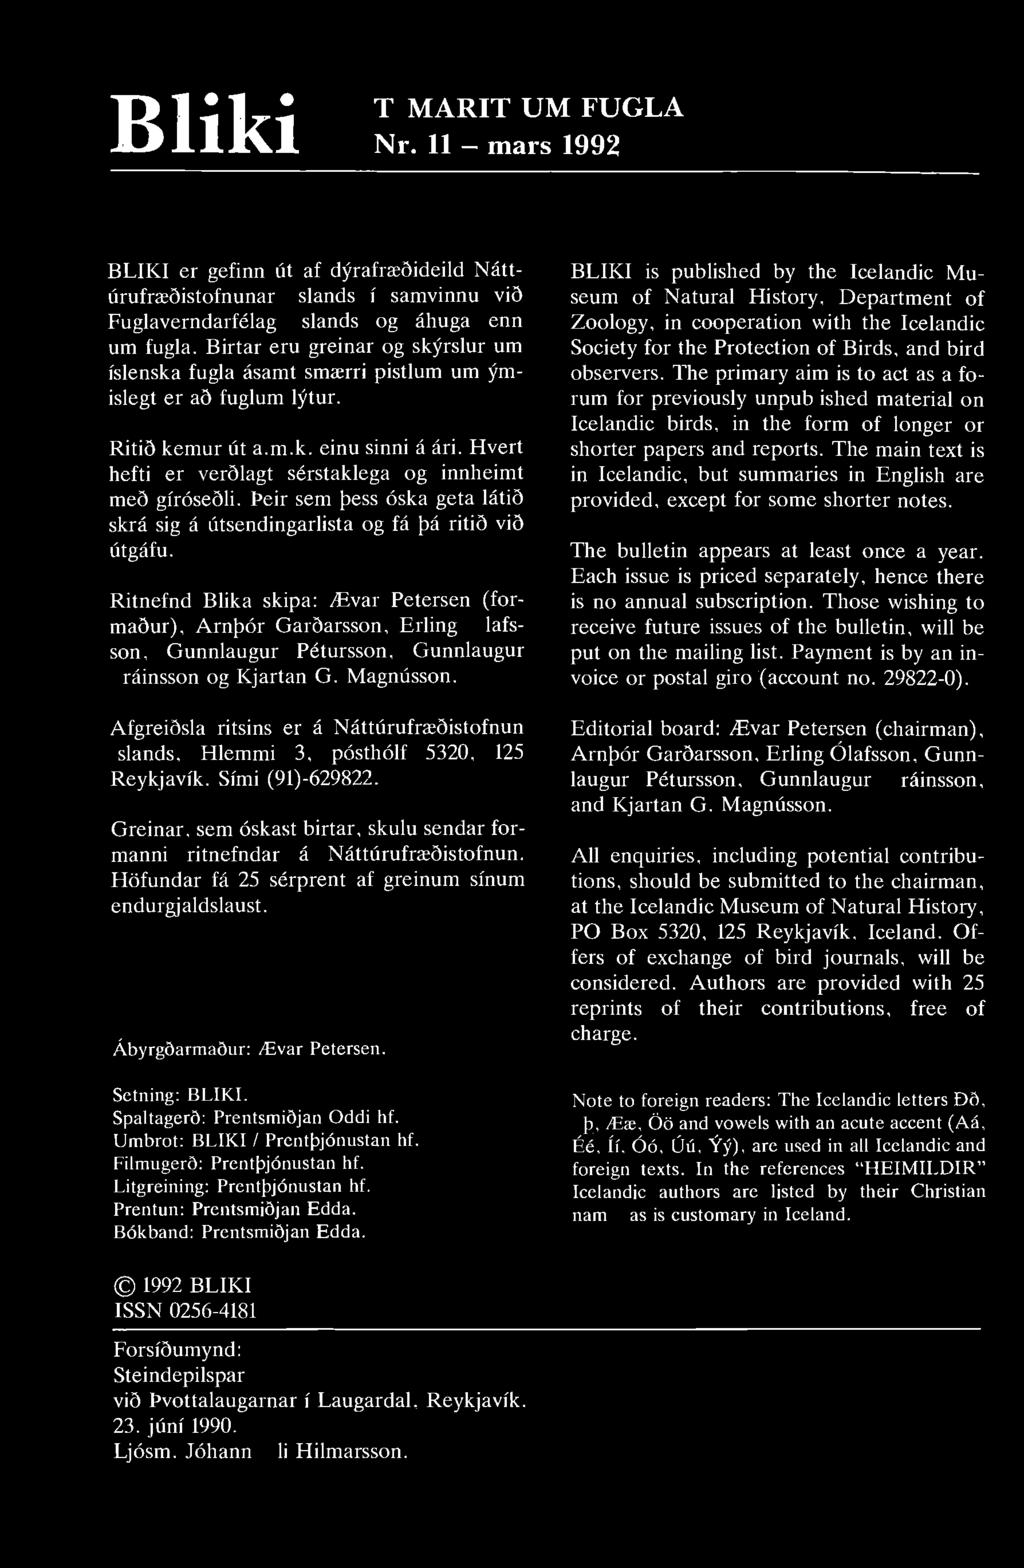 Bliki TÍMARIT UM FUGLA Nr. 11 - mars 1992 BLIKI er gefinn út af dýrafræðideild Náttúrufræðistofnunar Íslands í samvinnu við Fuglaverndarfélag Íslands og áhugamenn um fugla.